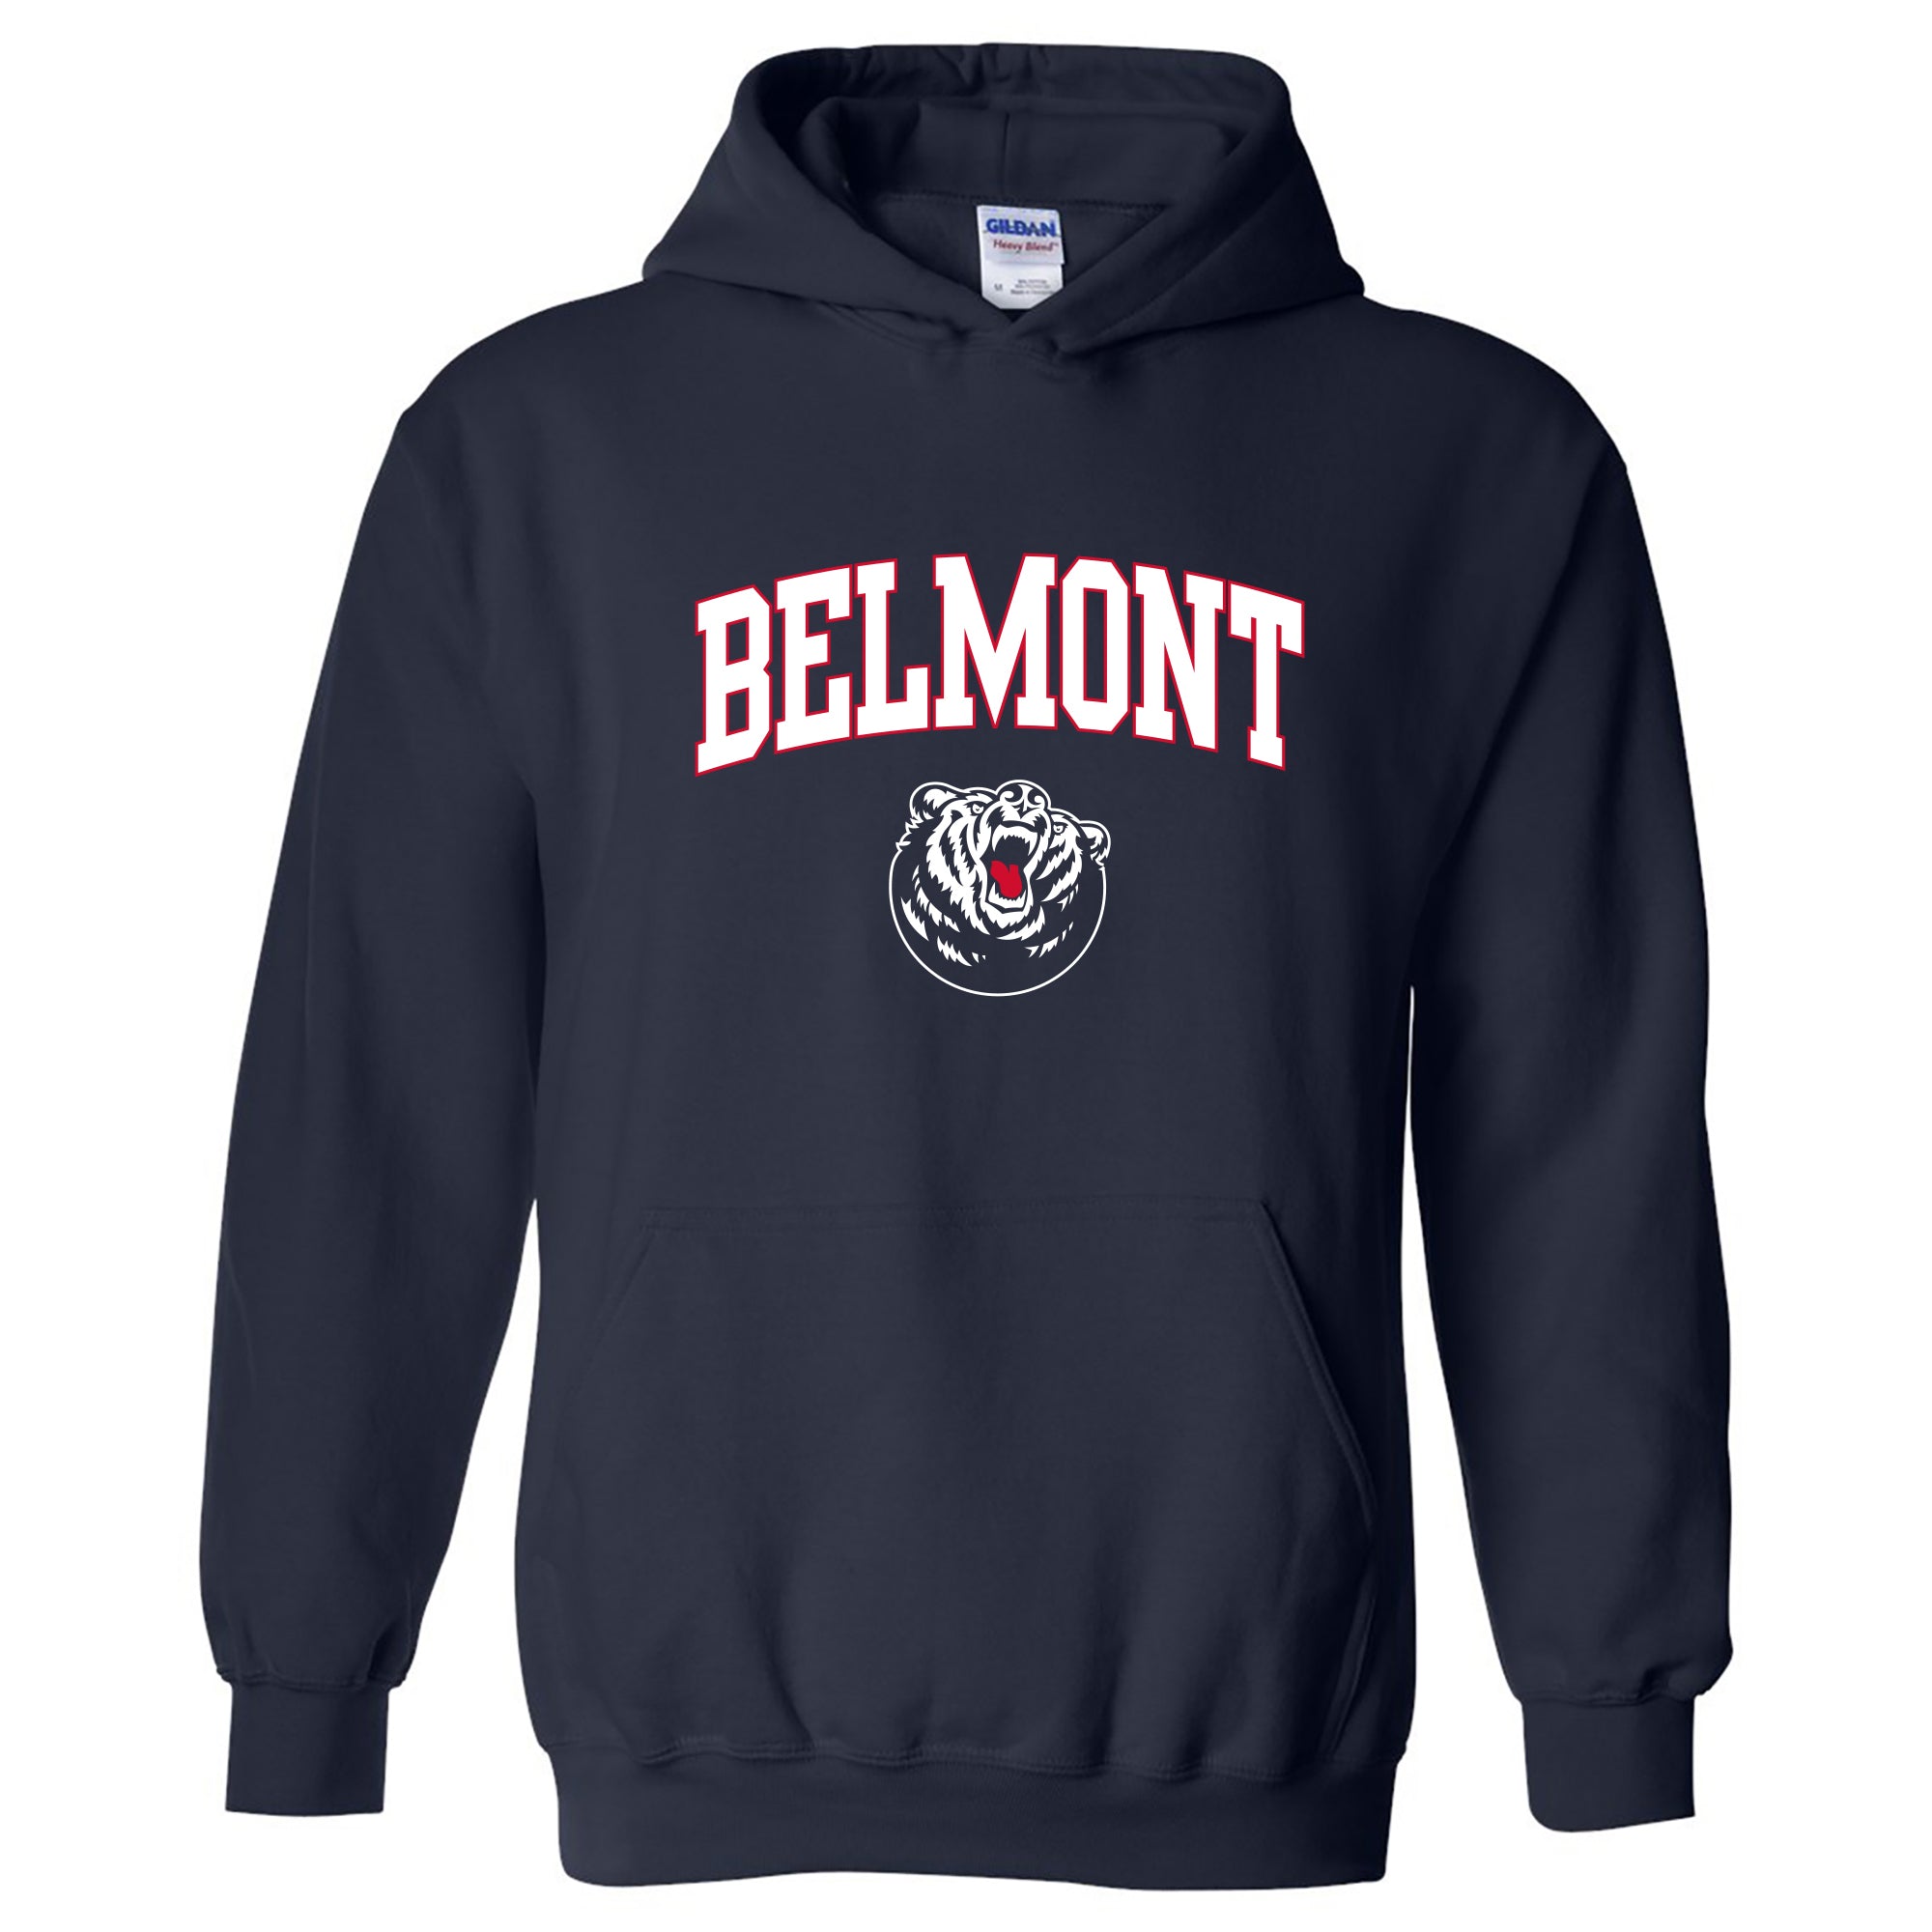 Belmont Launches The Bruin Shop - Belmont University